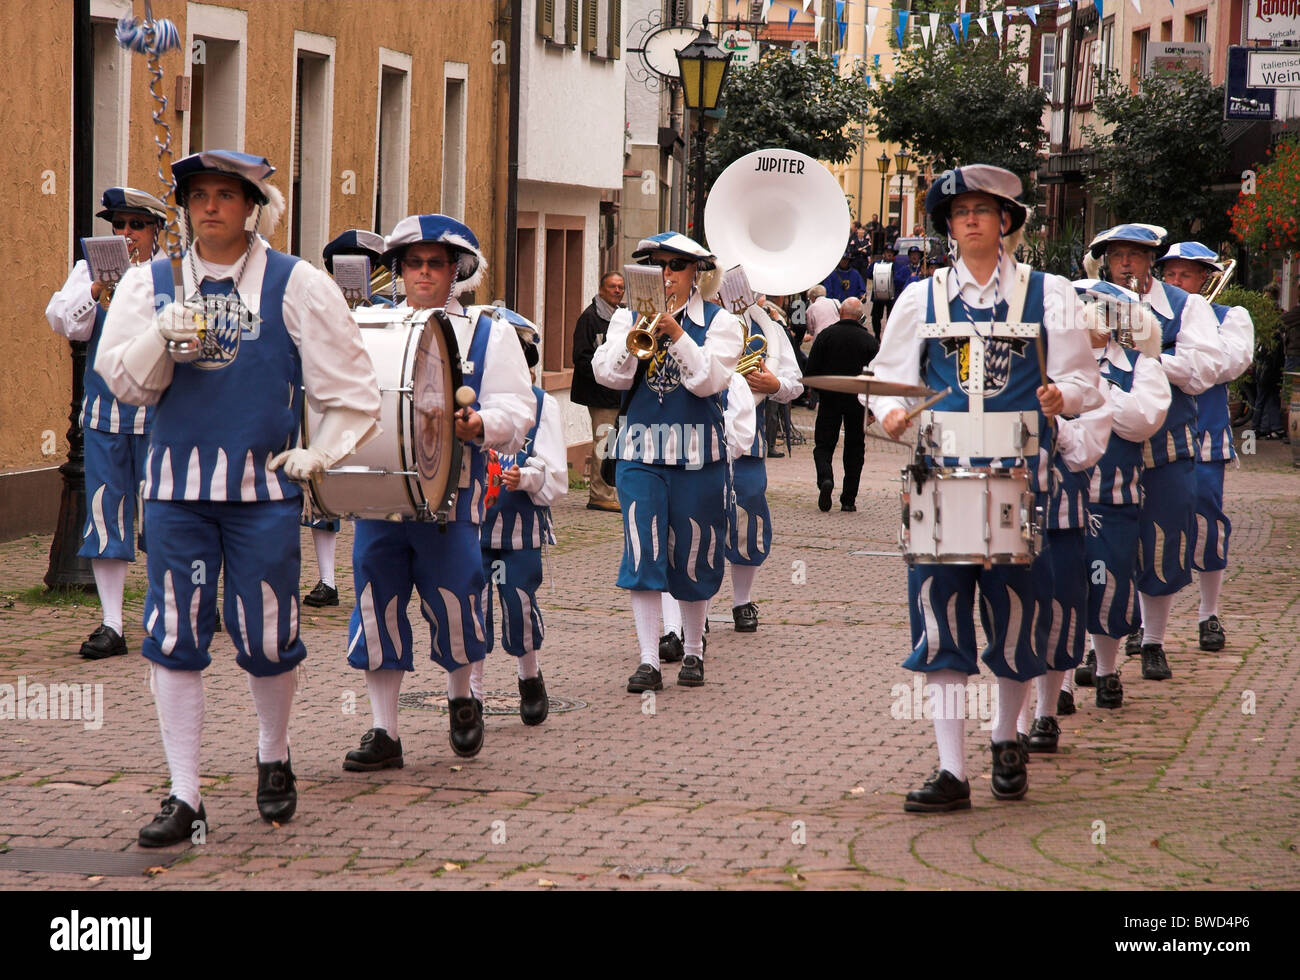 Alfiere, musicisti in costume street parade, celebrazioni giubilari, Eberbach offrono, Germania Foto Stock